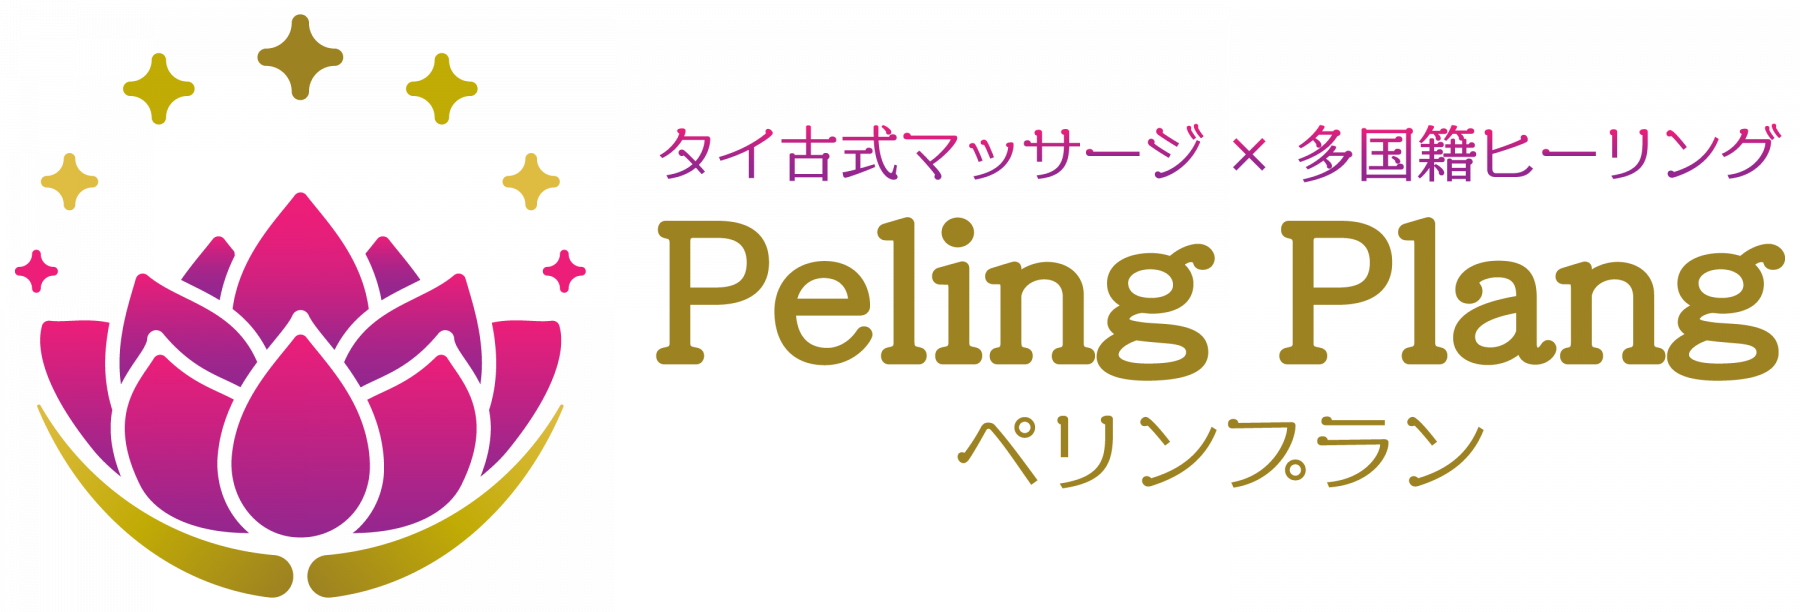 Peling Plang(ぺリンプラン)